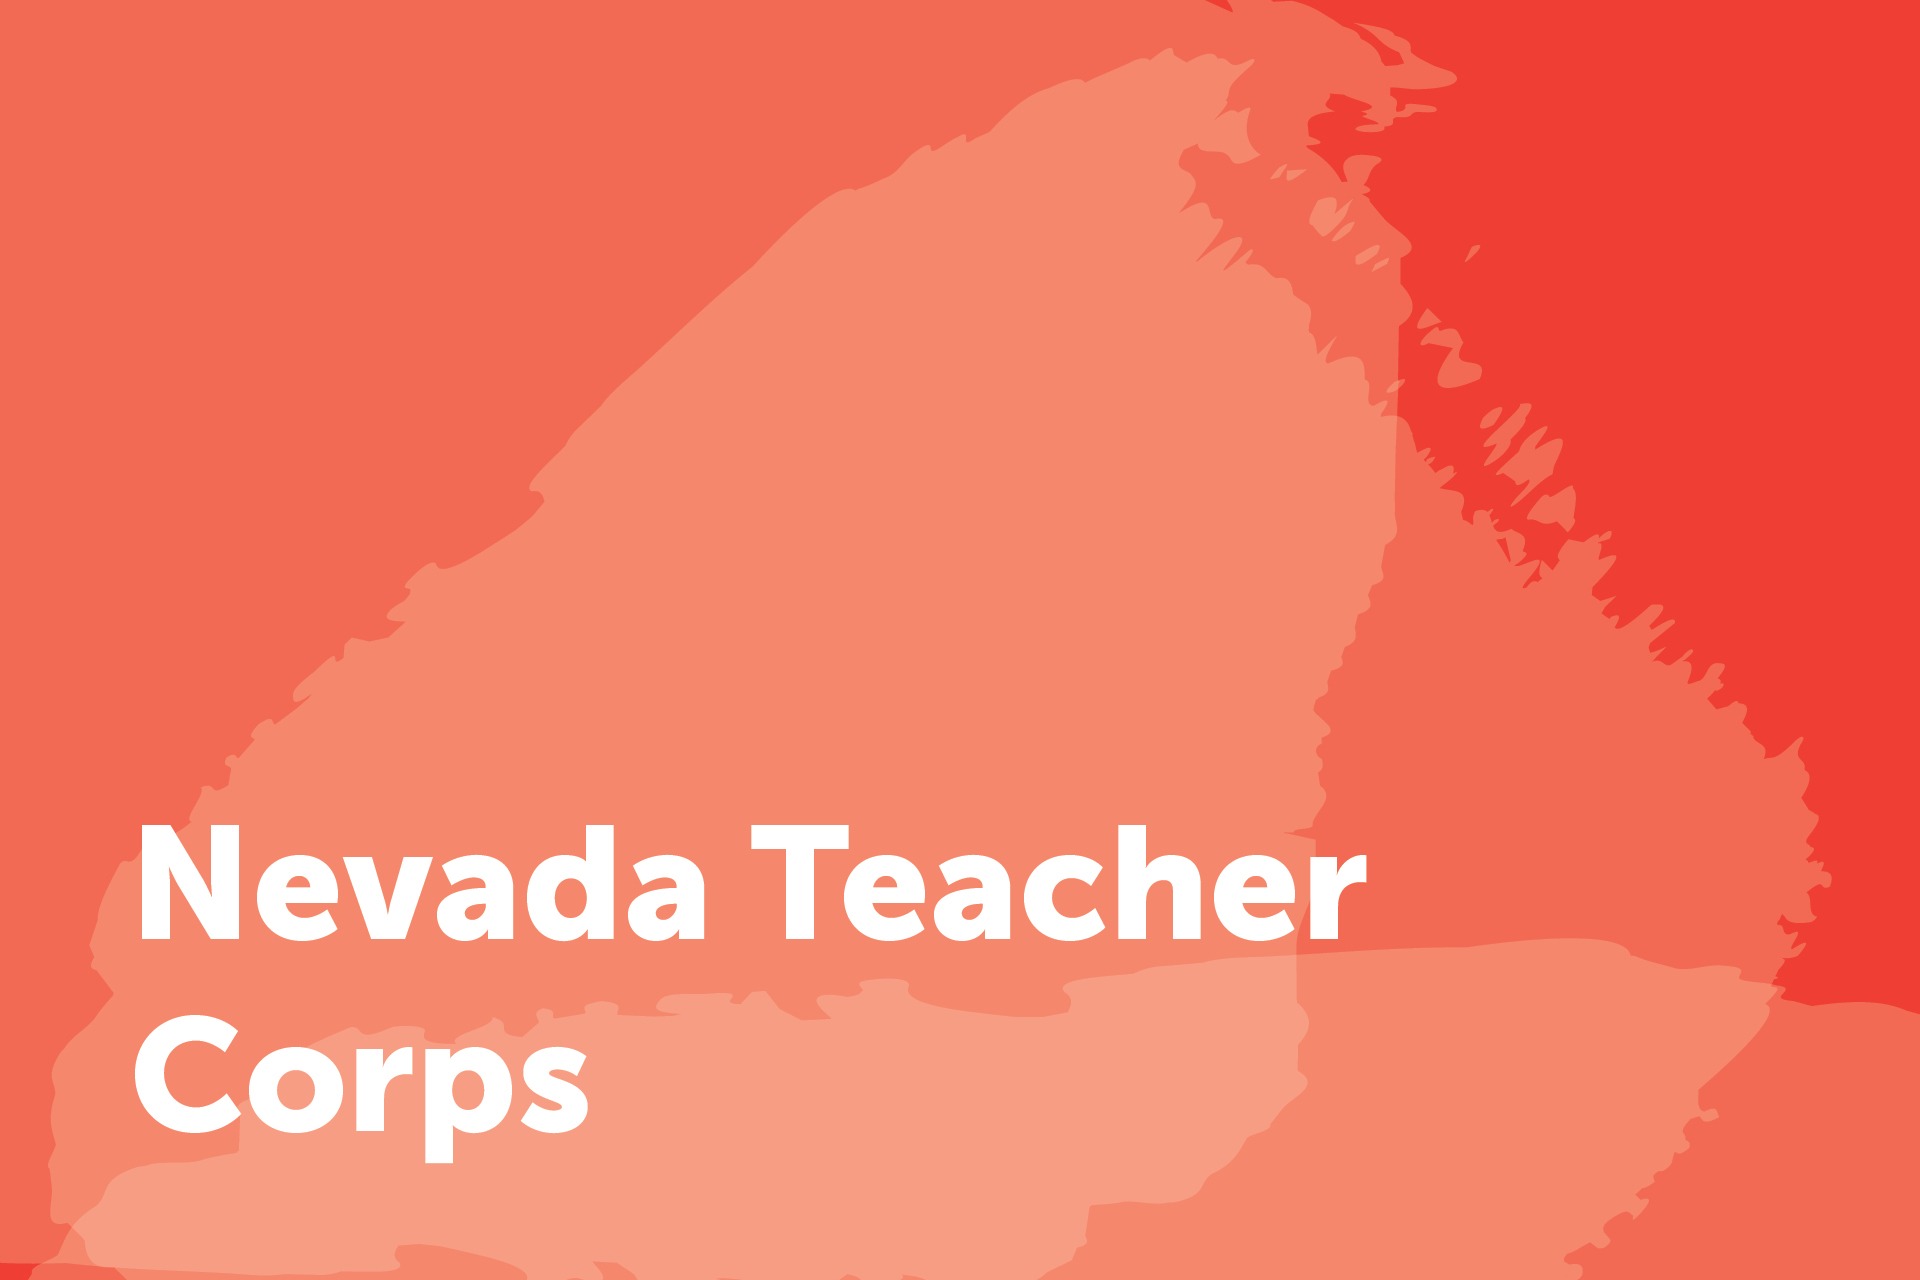 Nevada Teacher Corps